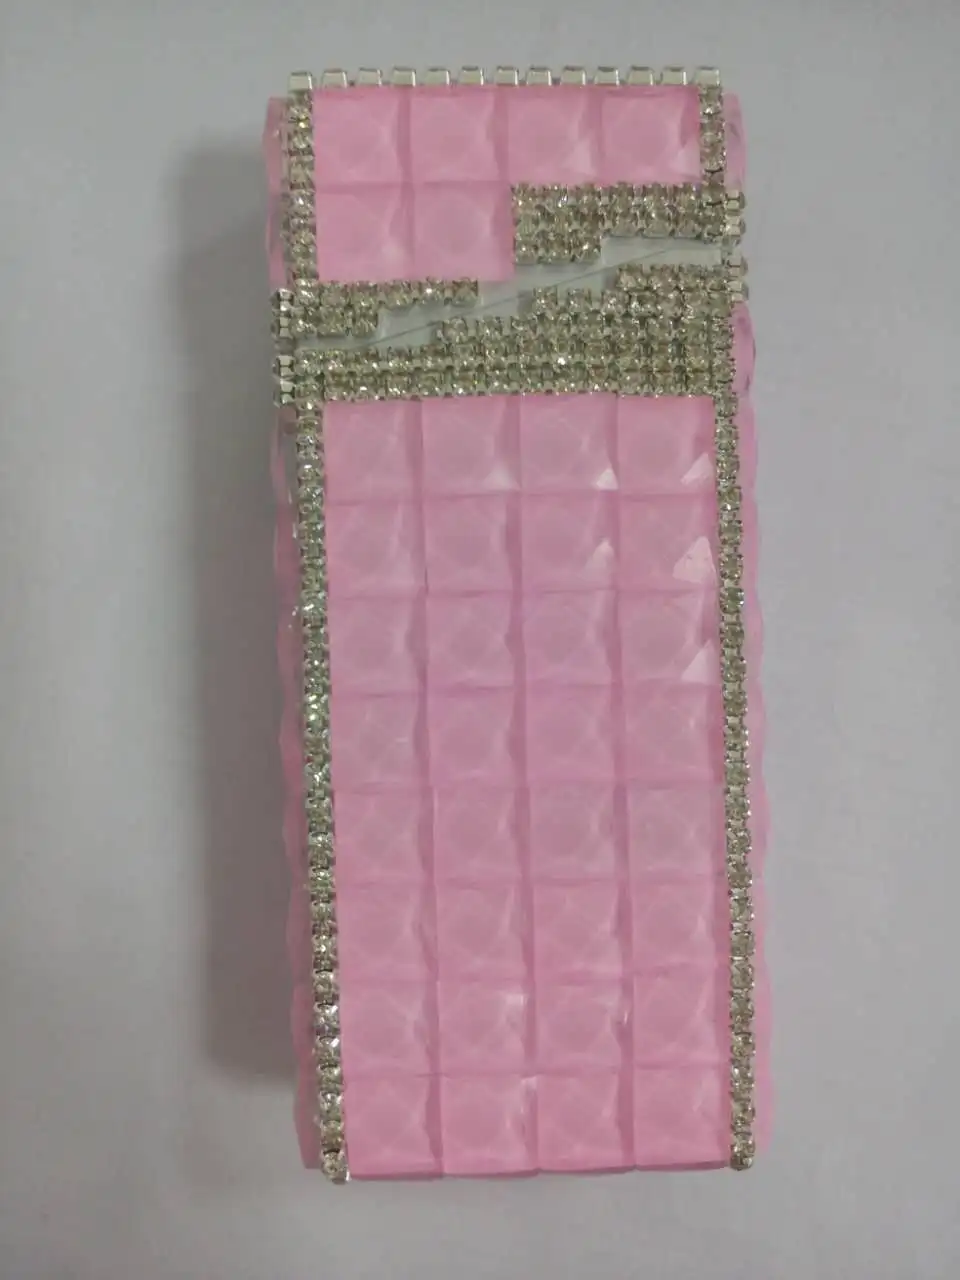 Алмазный портсигар, Andmade портсигар моды леди, розовый портсигар для молодых дам милый портсигар - Цвет: Розовый